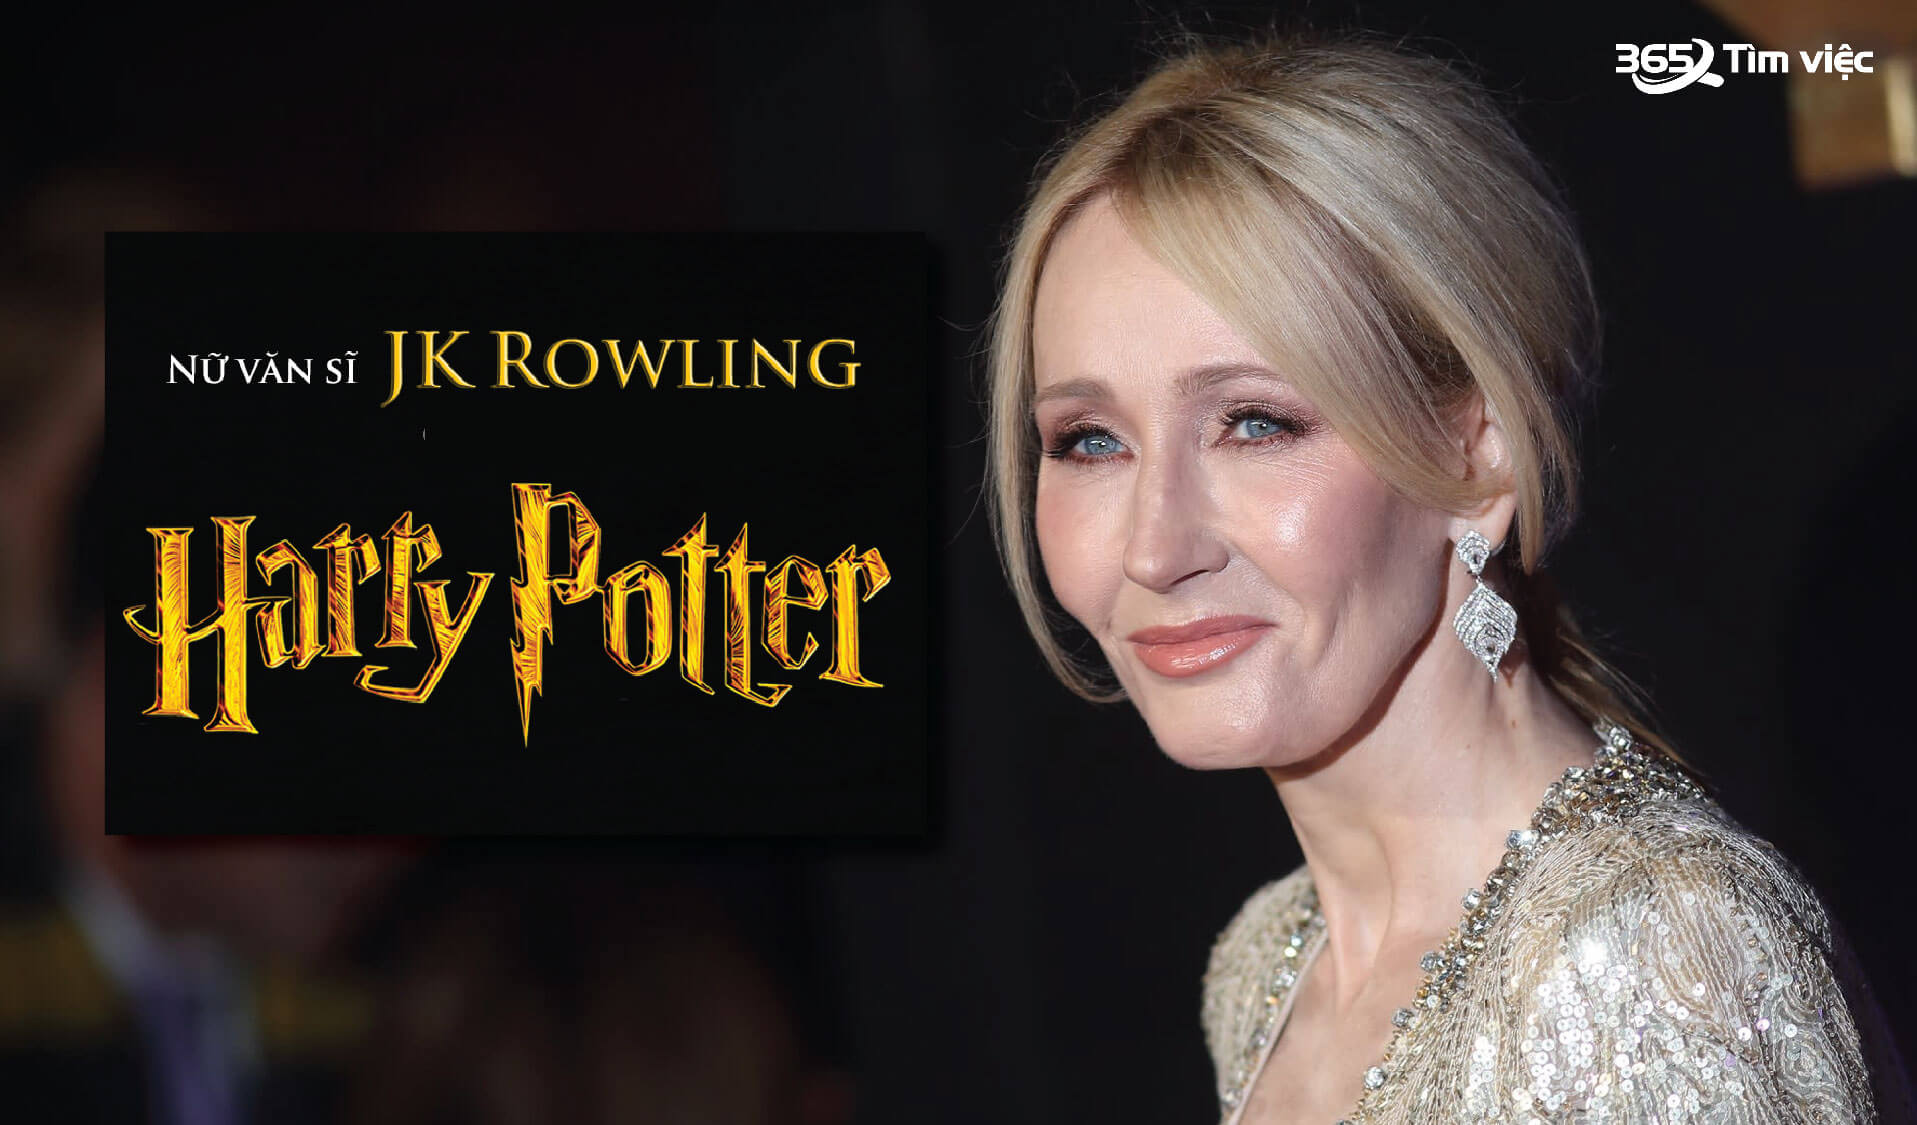  Gia đình và sự nghiệp của J.K Rowling nữ văn sĩ tài ba